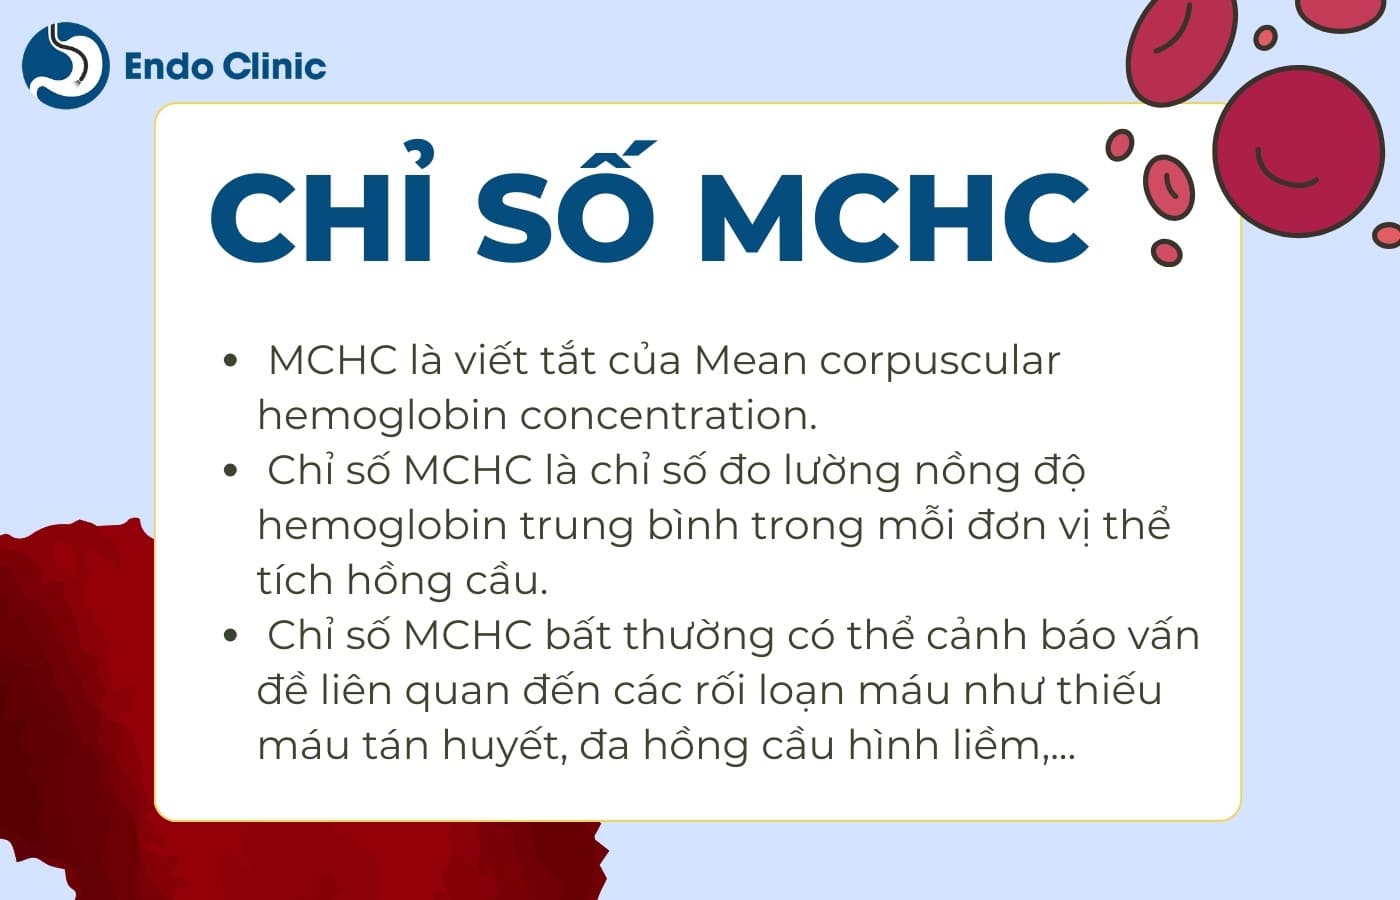 Tổng quan chỉ số xét nghiệm MCHC trong công thức máu